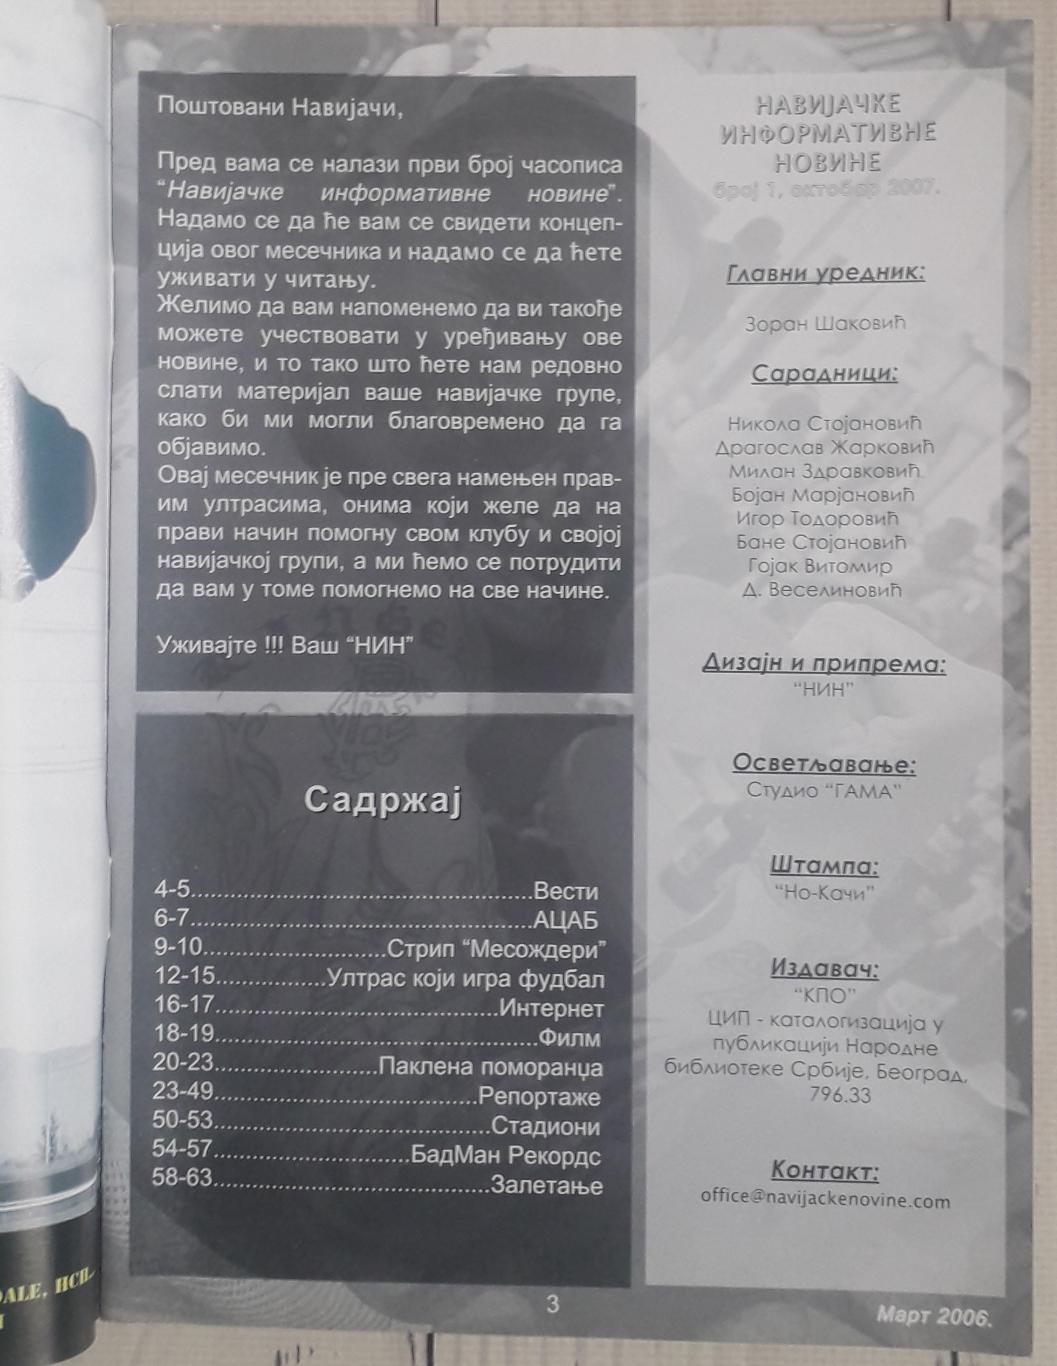 Фанзин Навиjачке Информативне Новине №1. Октябрь 2007. Сербія 1